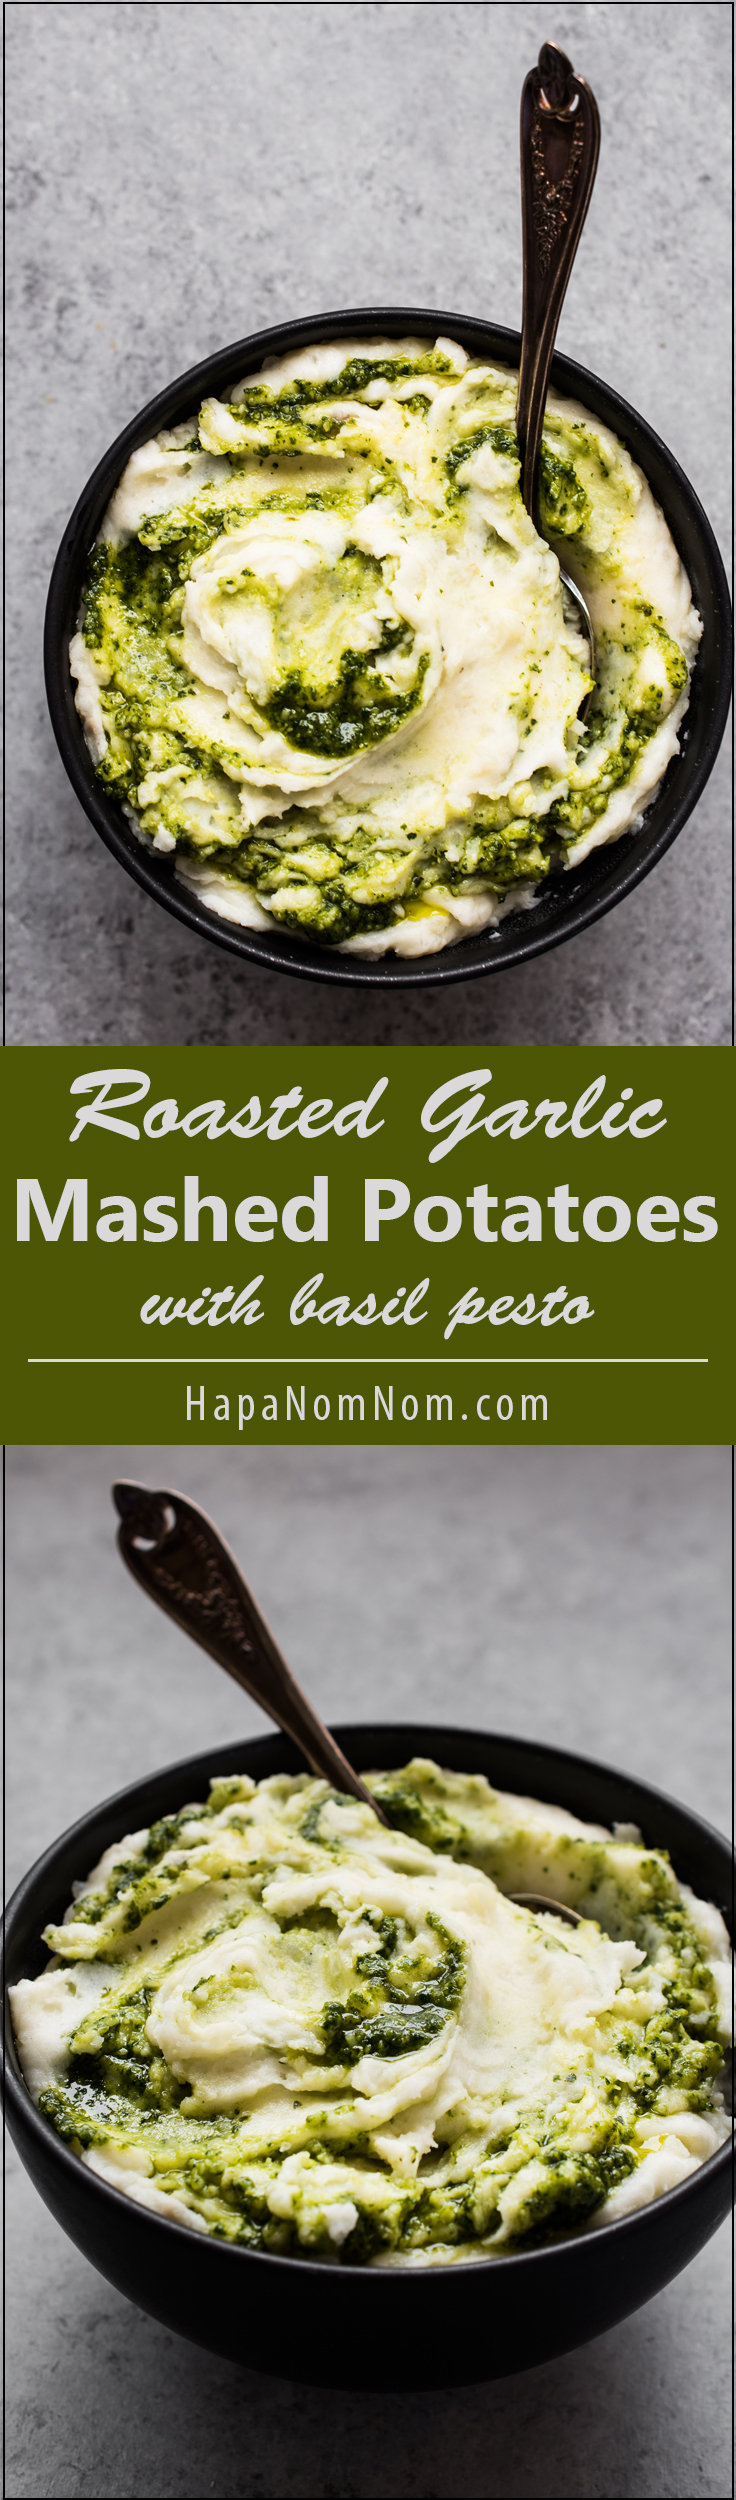 Super Creamy Roasted Garlic Mashed Potatoes with Basil Pesto